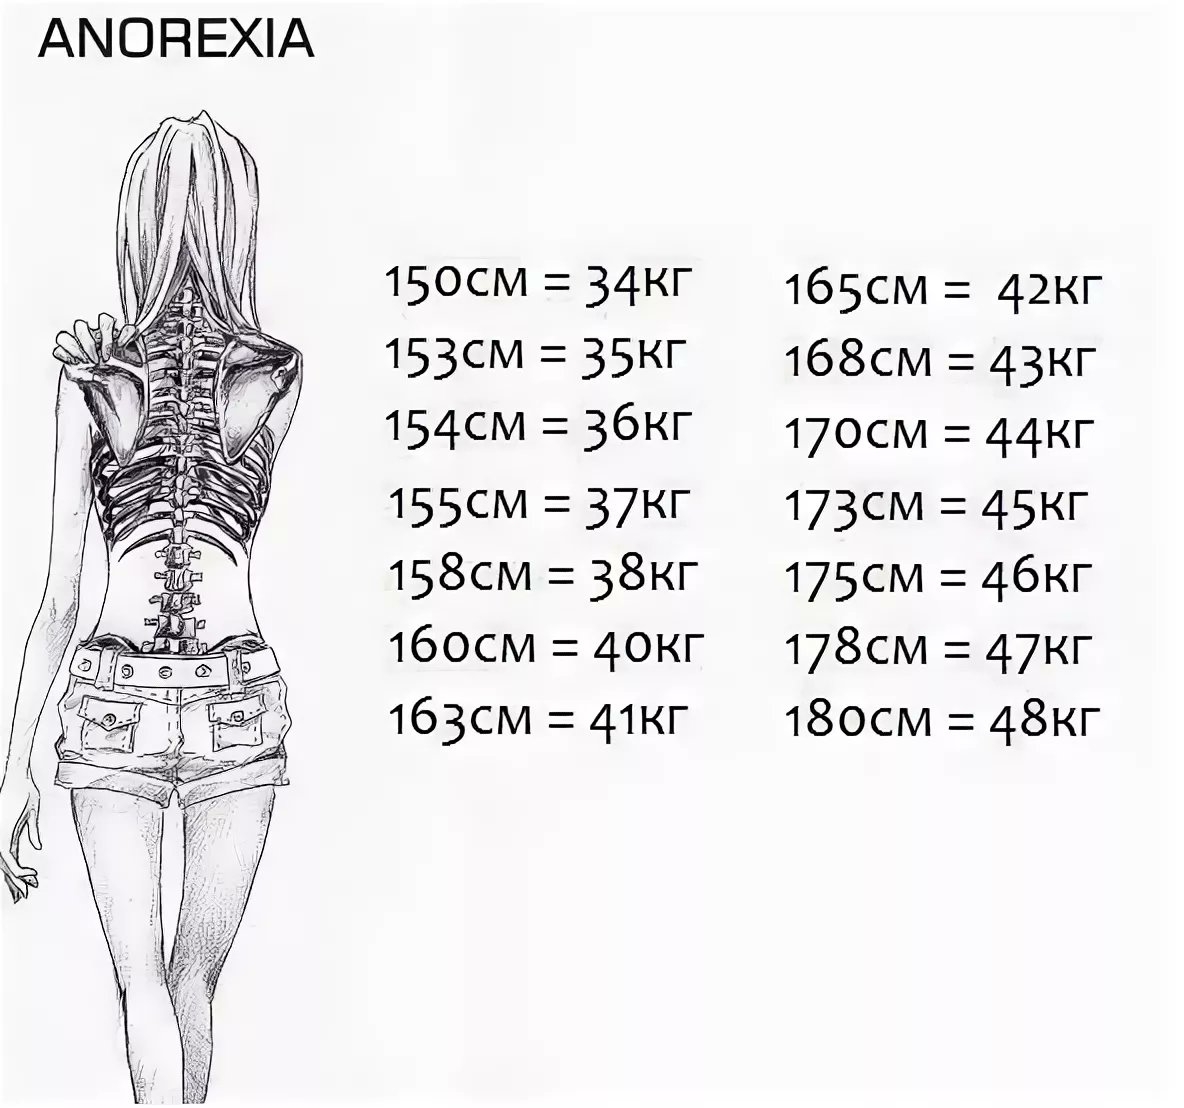 49 50 ru. Анорексия вес и рост. С какого веса начинается анорексия при росте 160. Таблица анорексии рост вес.